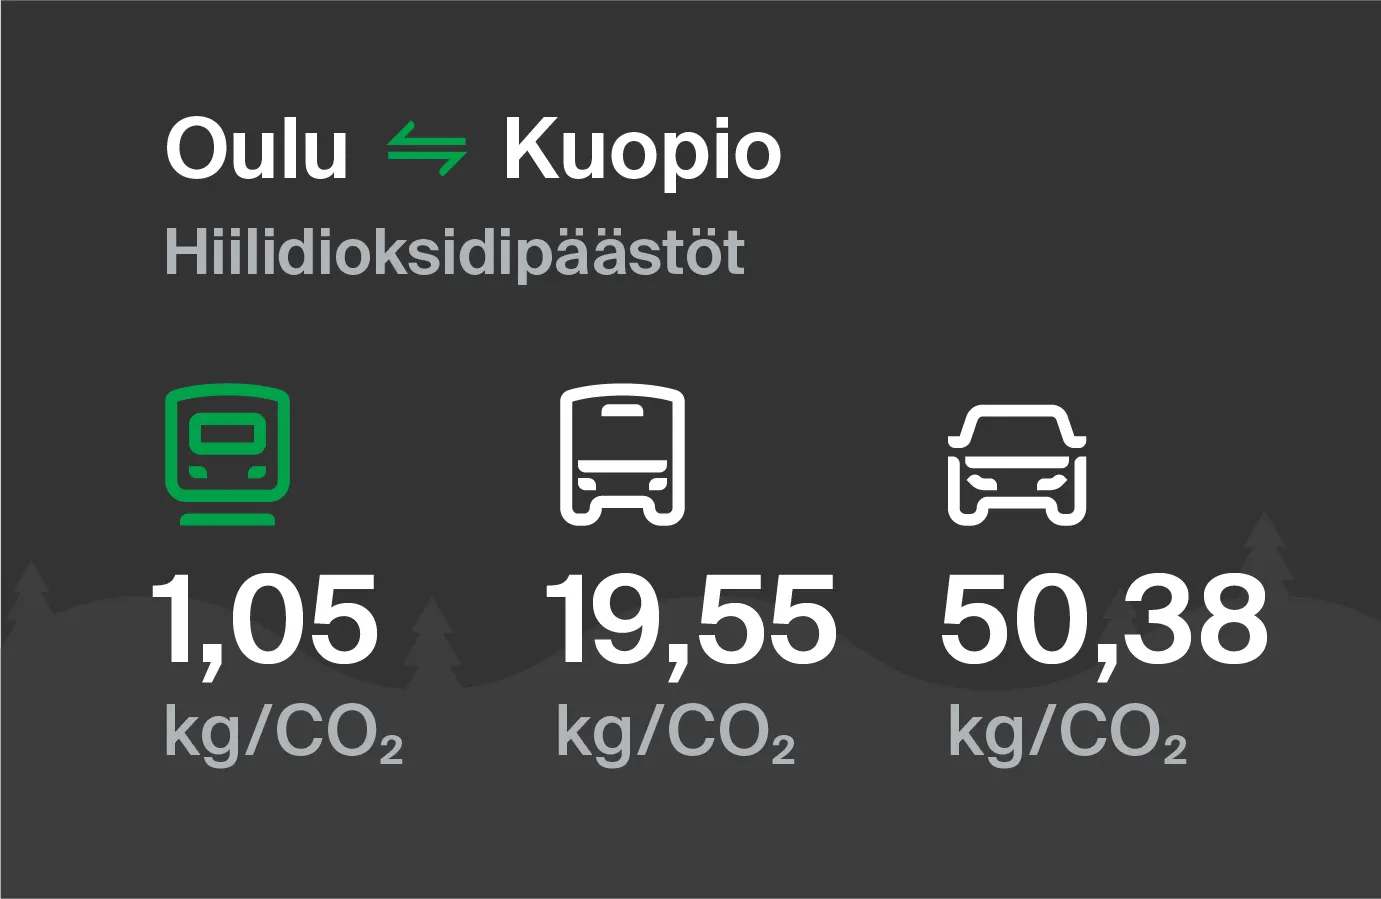 Hiilidioksidipäästöt Oulusta Kuopioon eri kulkuvälinemuodoilla: junalla 1,05 kg/CO2, bussilla 19,55 kg/CO2 ja autolla 50,38 kg/CO2.